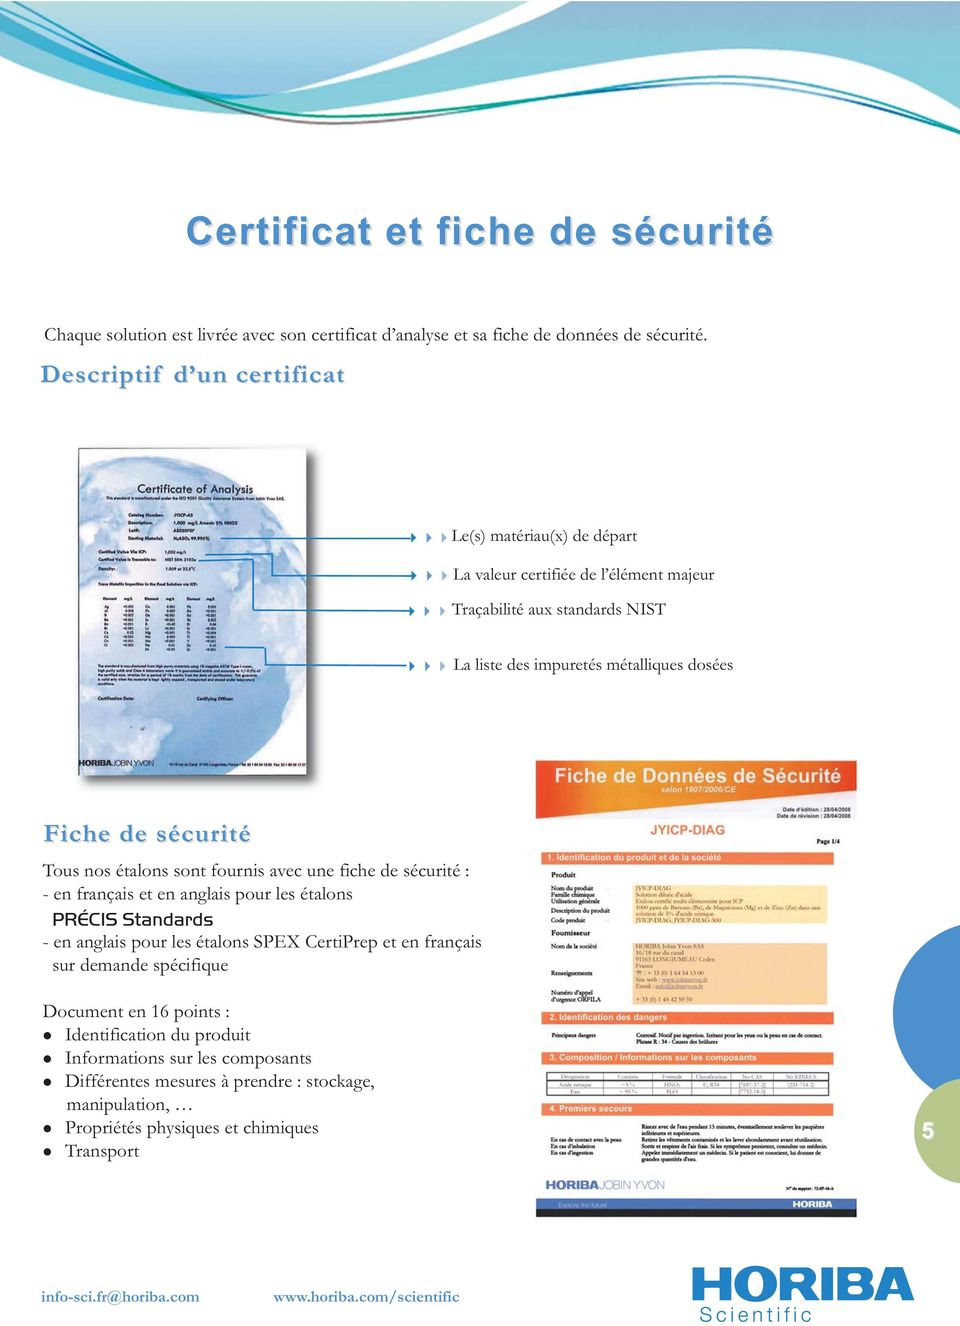 Tous nos étalons sont fournis avec une fiche de sécurité : - en français et en anglais pour les étalons PRÉCIS Standards - en anglais pour les étalons SPEX CertiPrep et en français sur